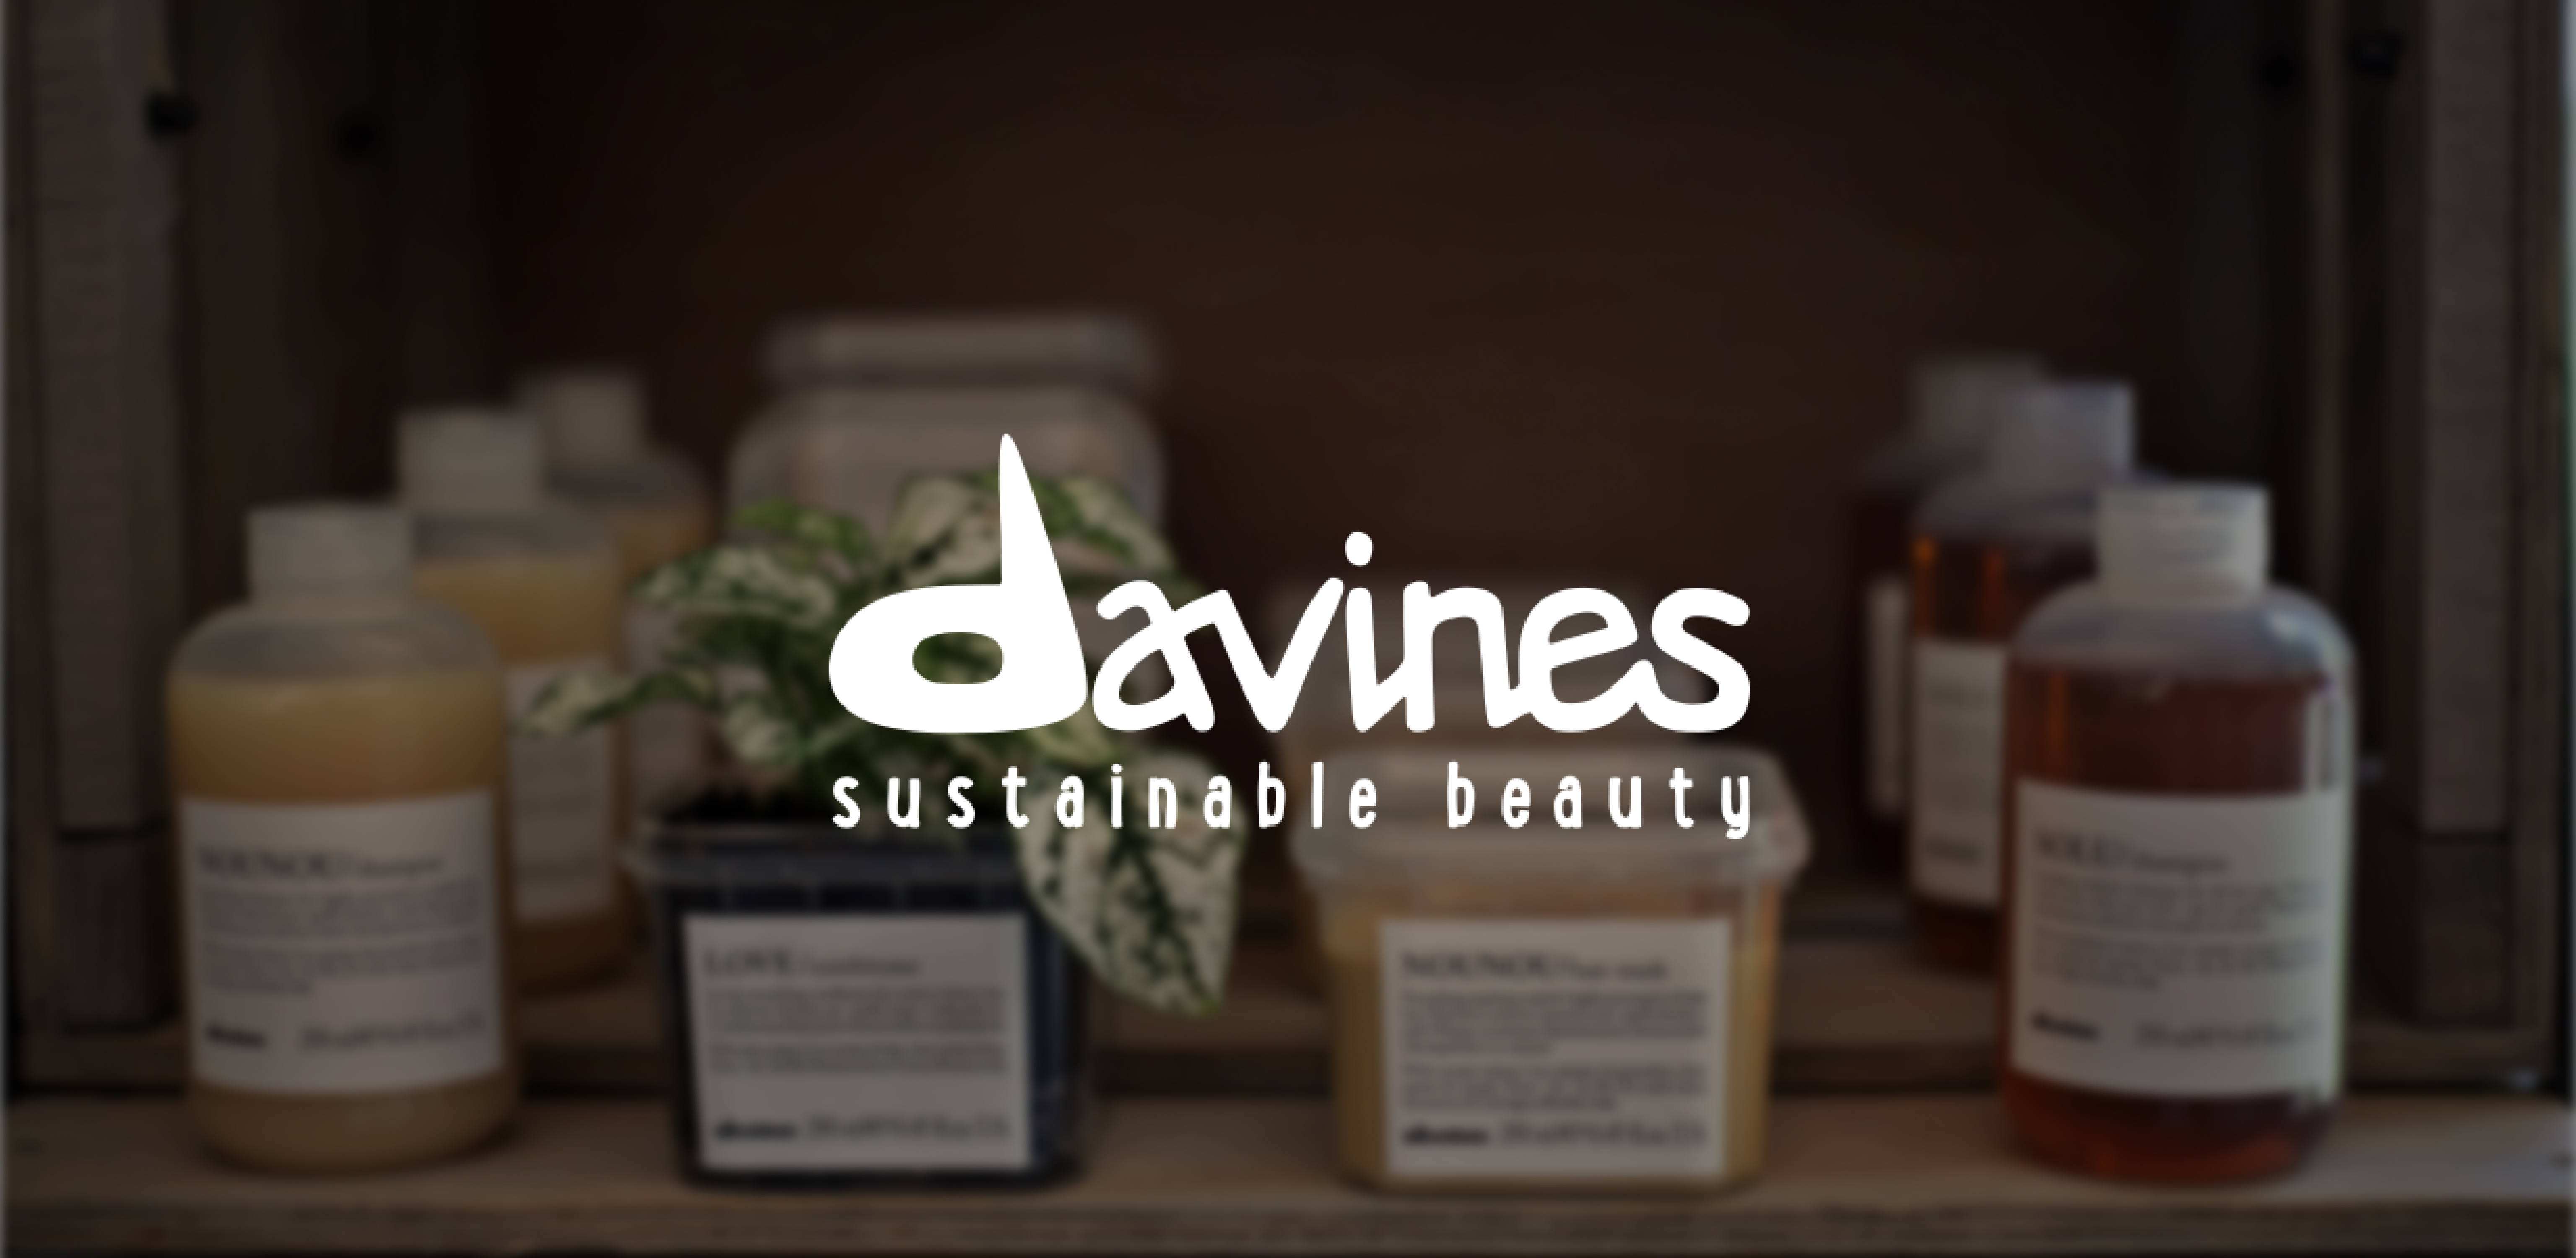 Davines – профессиональная косметика для волос премиум-класса из Италии.